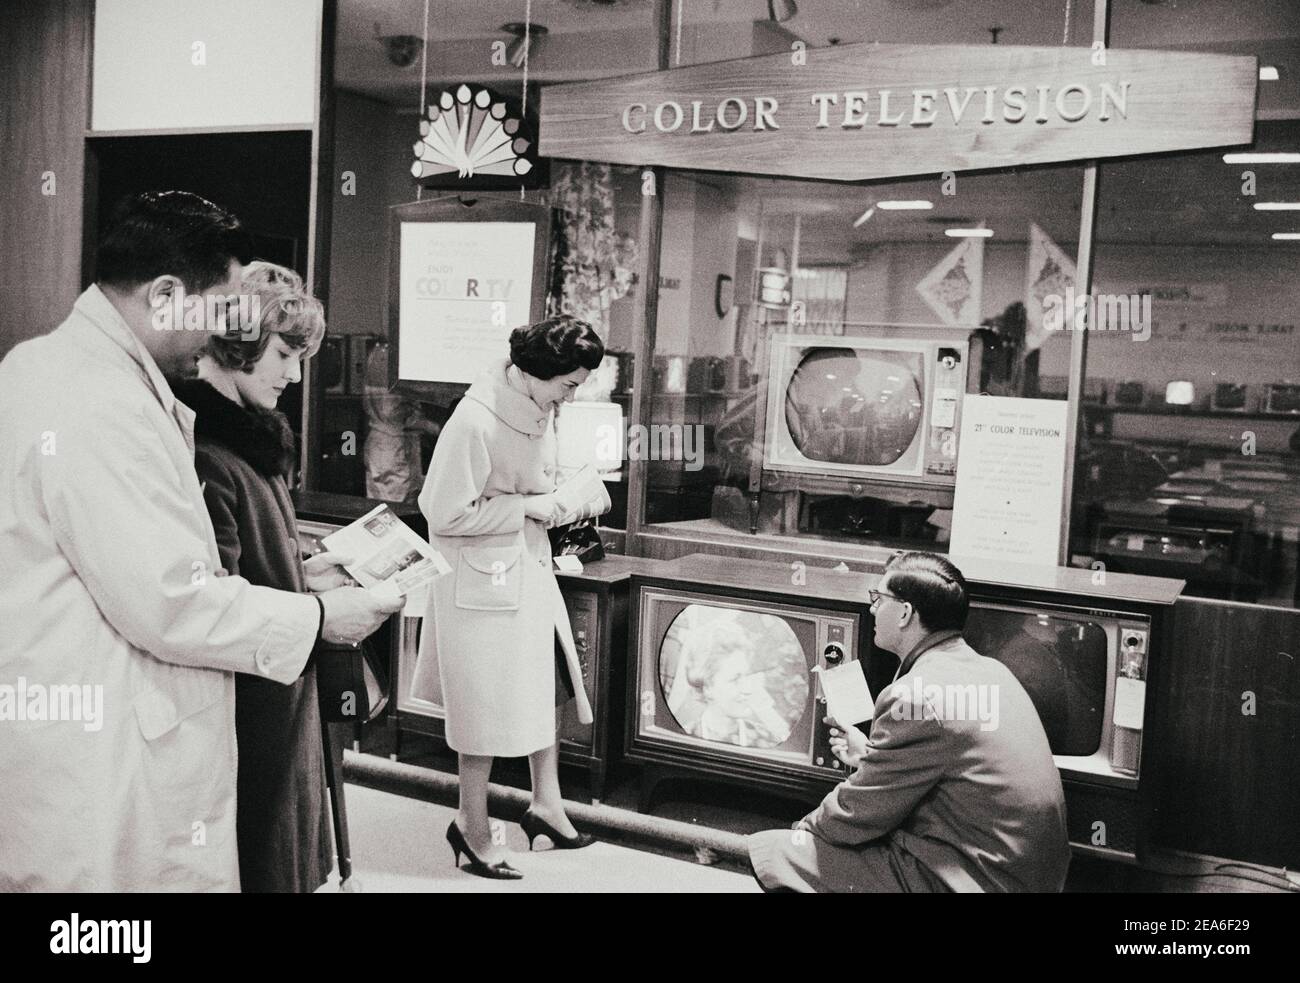 Vintage-Foto von Schaufenstern vor Schaufenster Shop mit neuen Modellen von Farbfernseher. USA. März 16, 1965. Stockfoto